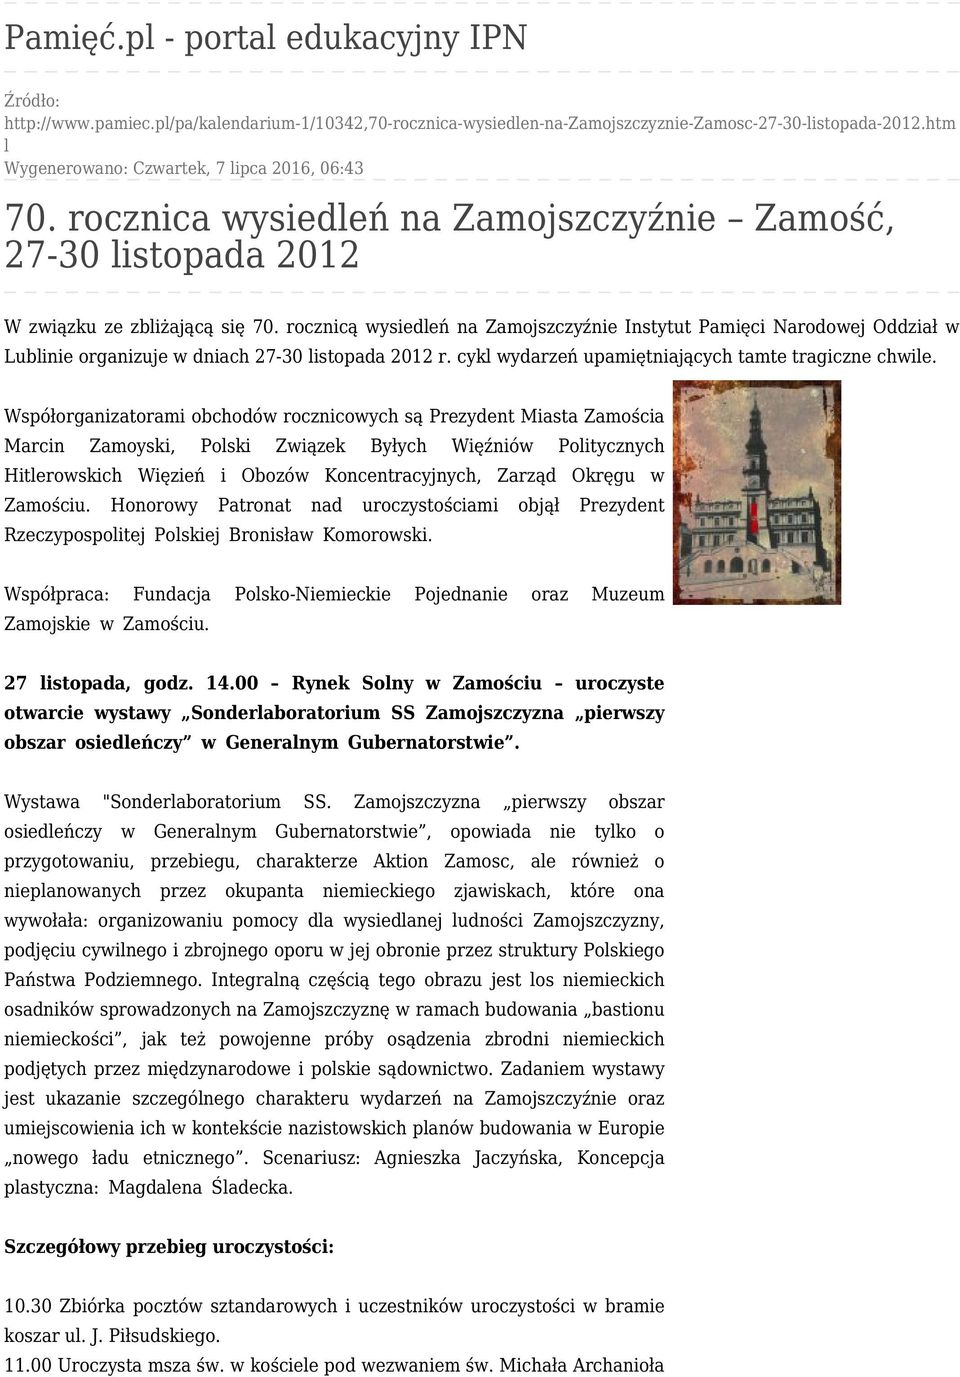 rocznicą wysiedleń na Zamojszczyźnie Instytut Pamięci Narodowej Oddział w Lublinie organizuje w dniach 27-30 listopada 2012 r. cykl wydarzeń upamiętniających tamte tragiczne chwile.